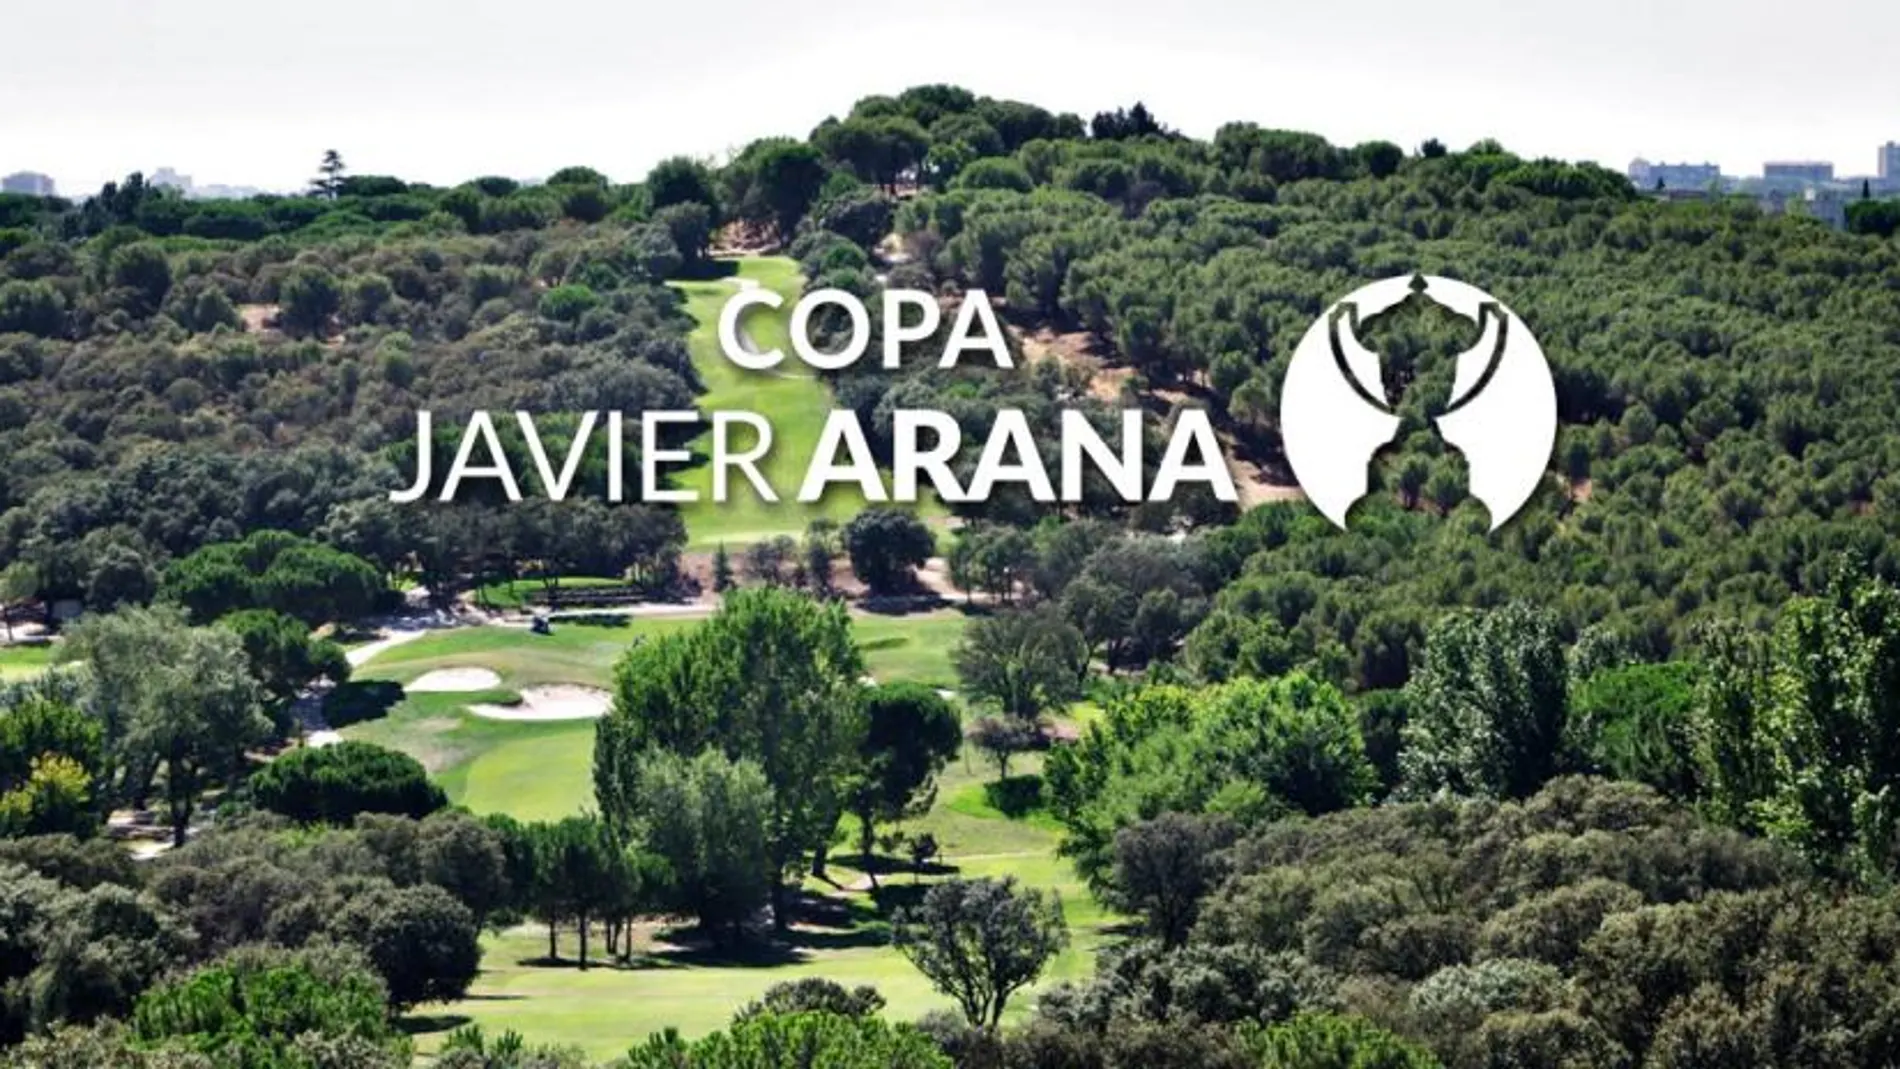 Copa Javier Arana - Premio Endesa en el Club de Campo Villa de Madrid